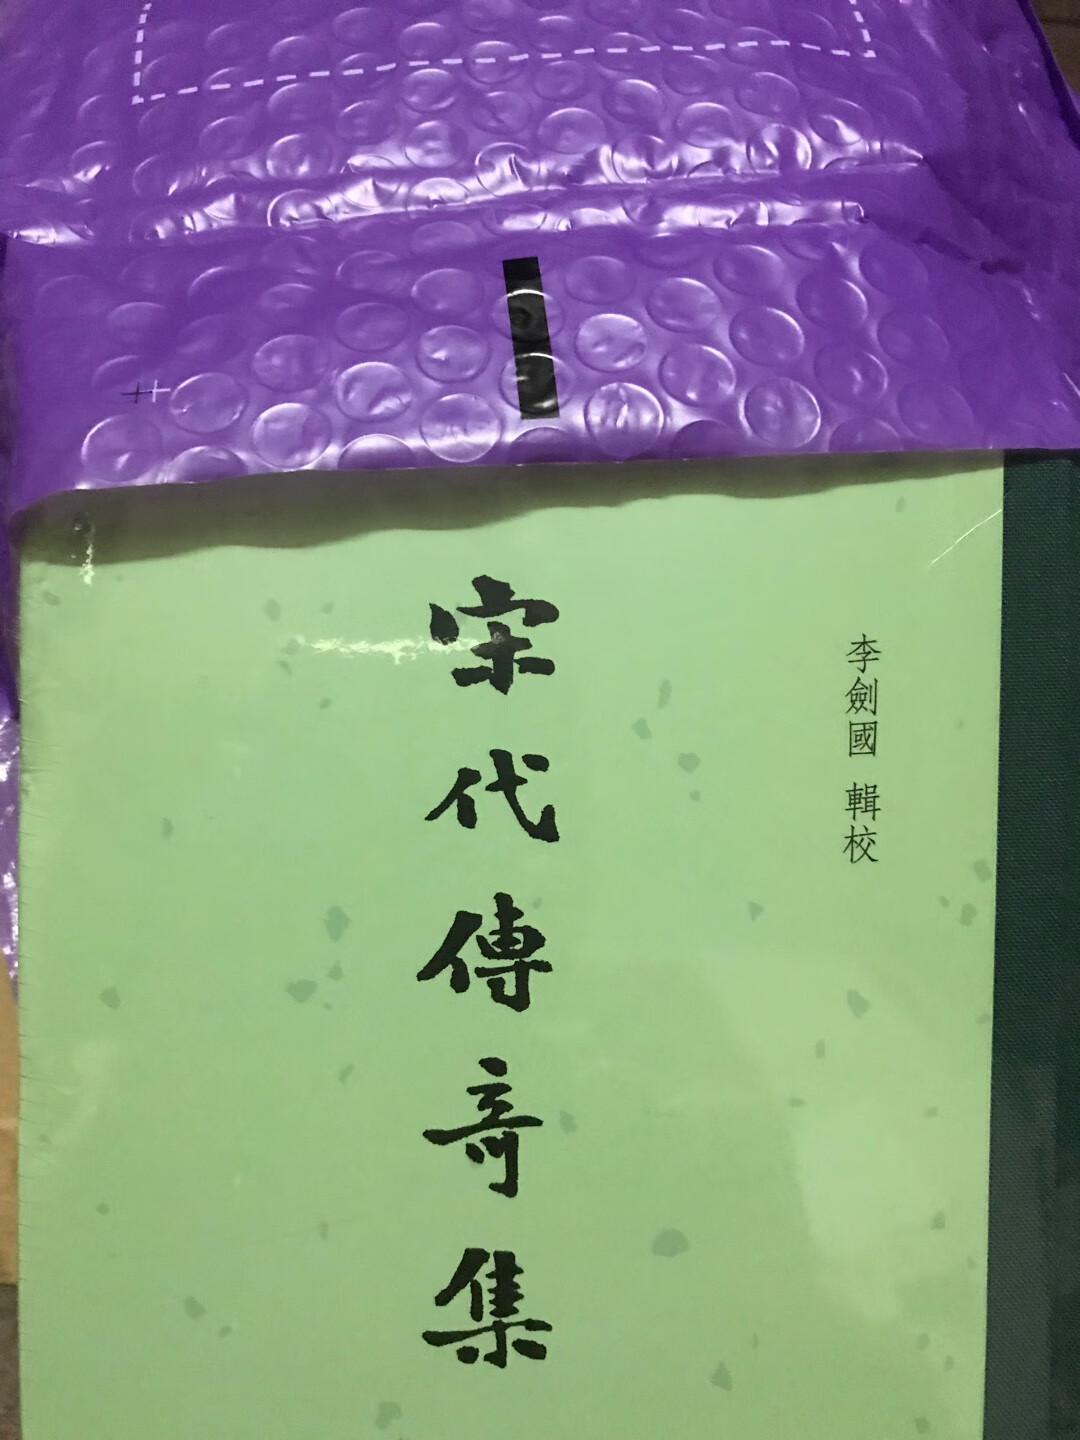 中华书局出版的这套书不错，多买了一套送朋友……缺点就是不是全部布面精装……